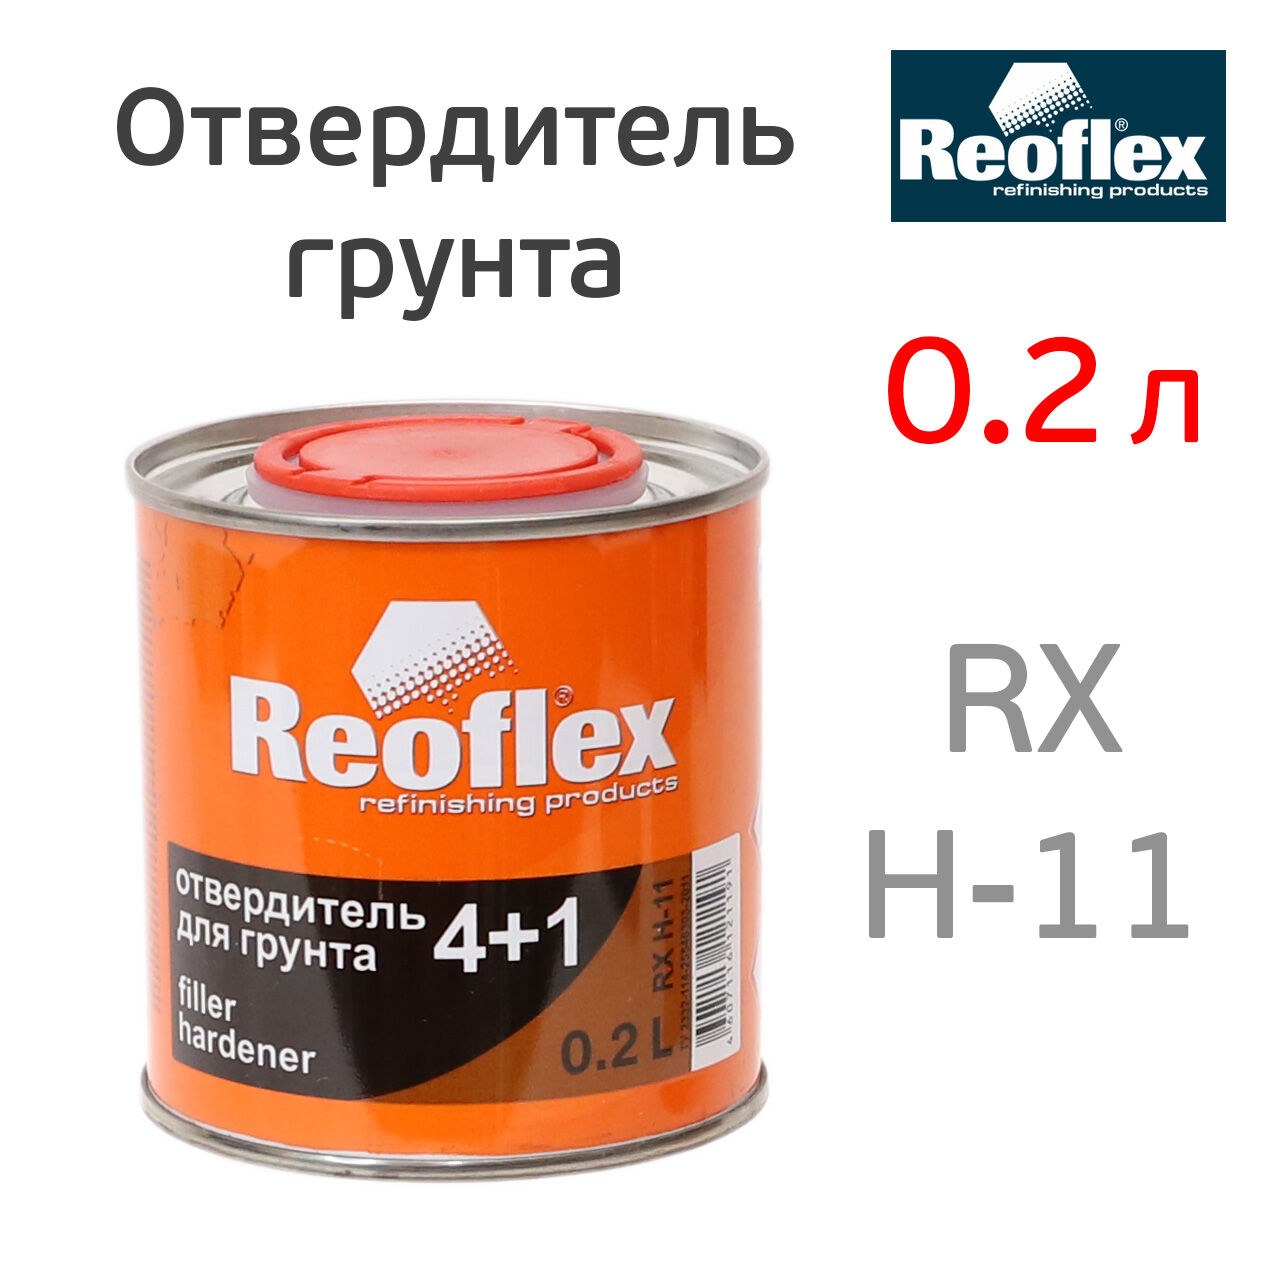 Отвердитель грунта Reoflex 4+1 (0,2л) для 0,8л